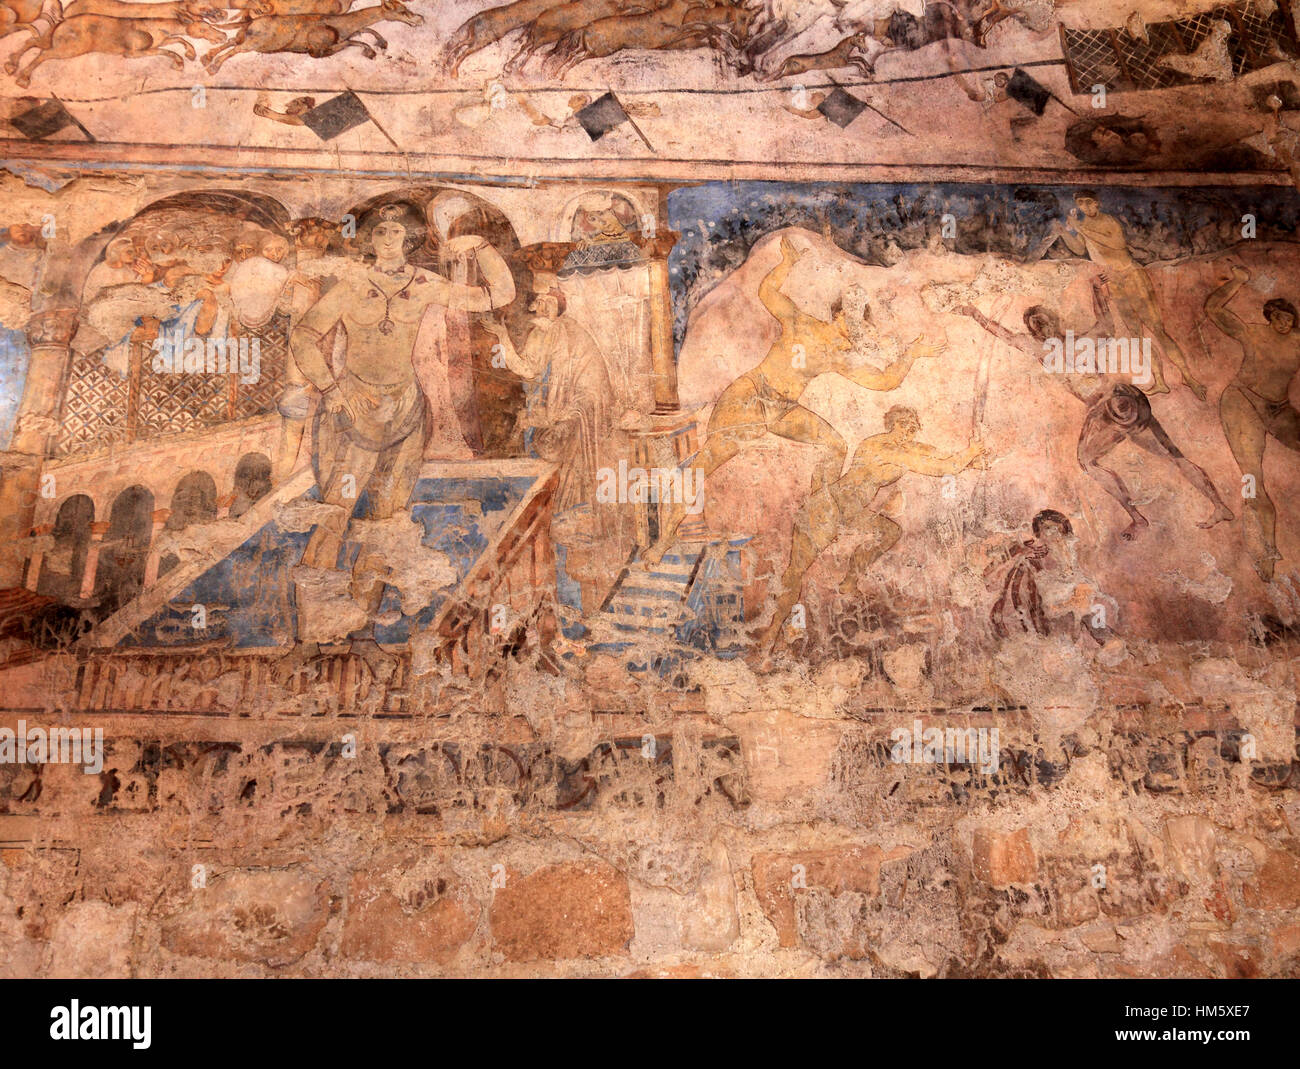 Fresques à l'intérieur de Qasr Amra, également transcrit Quseir Amra ou Qusayr Amra, est le plus connu des châteaux du désert situés dans l'est de la Jordanie Banque D'Images